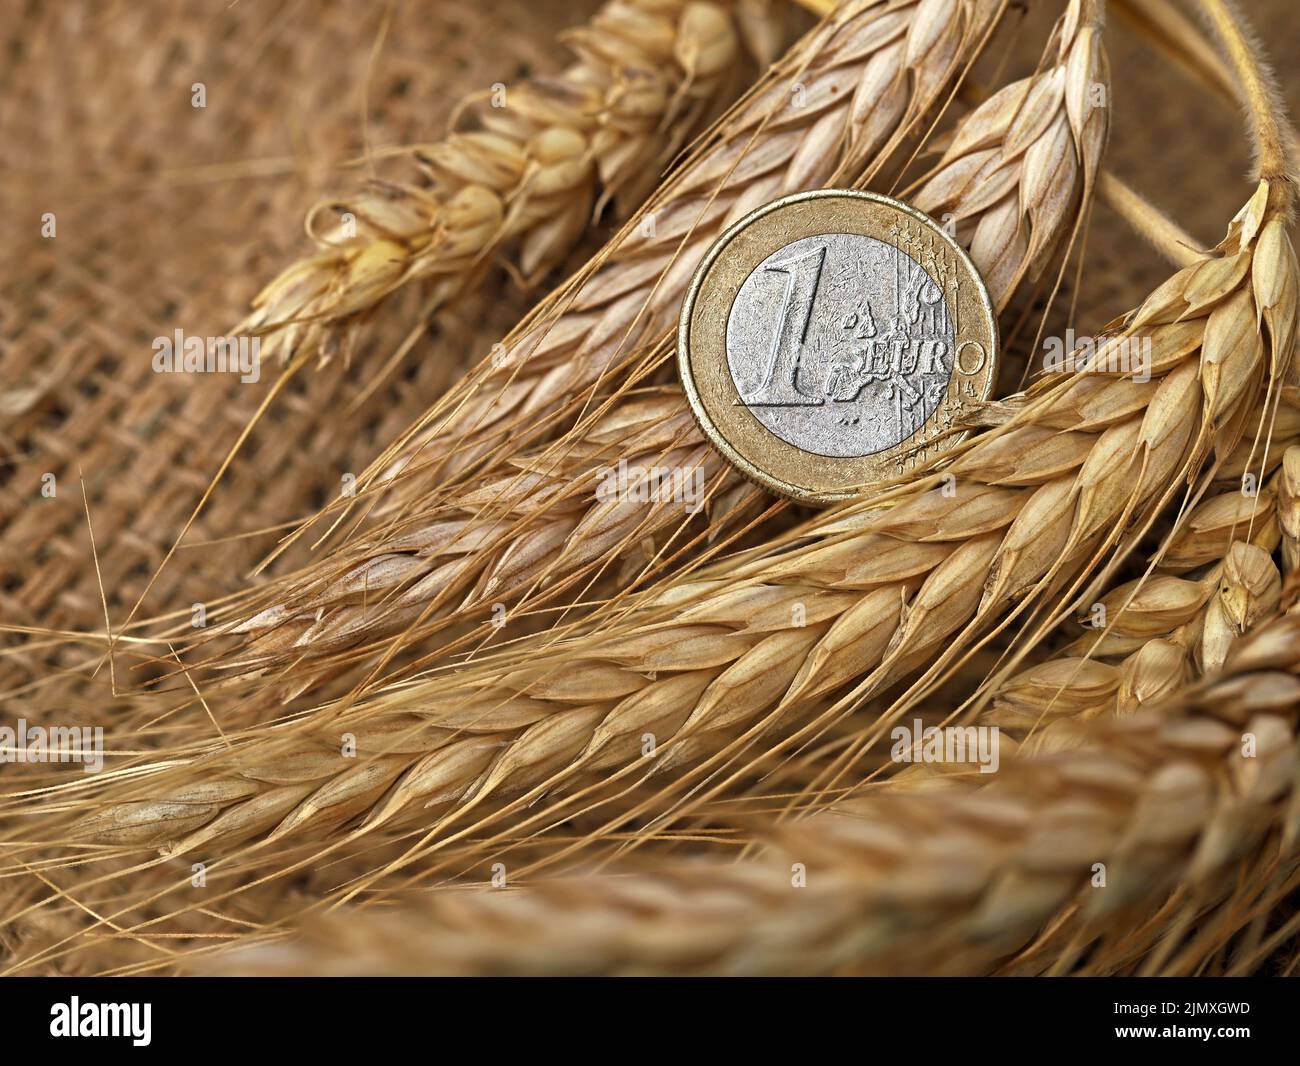 primo piano di una moneta da euro sulle spighe fresche di grano, immagine concettuale dell'aumento del prezzo del grano in futuro Foto Stock